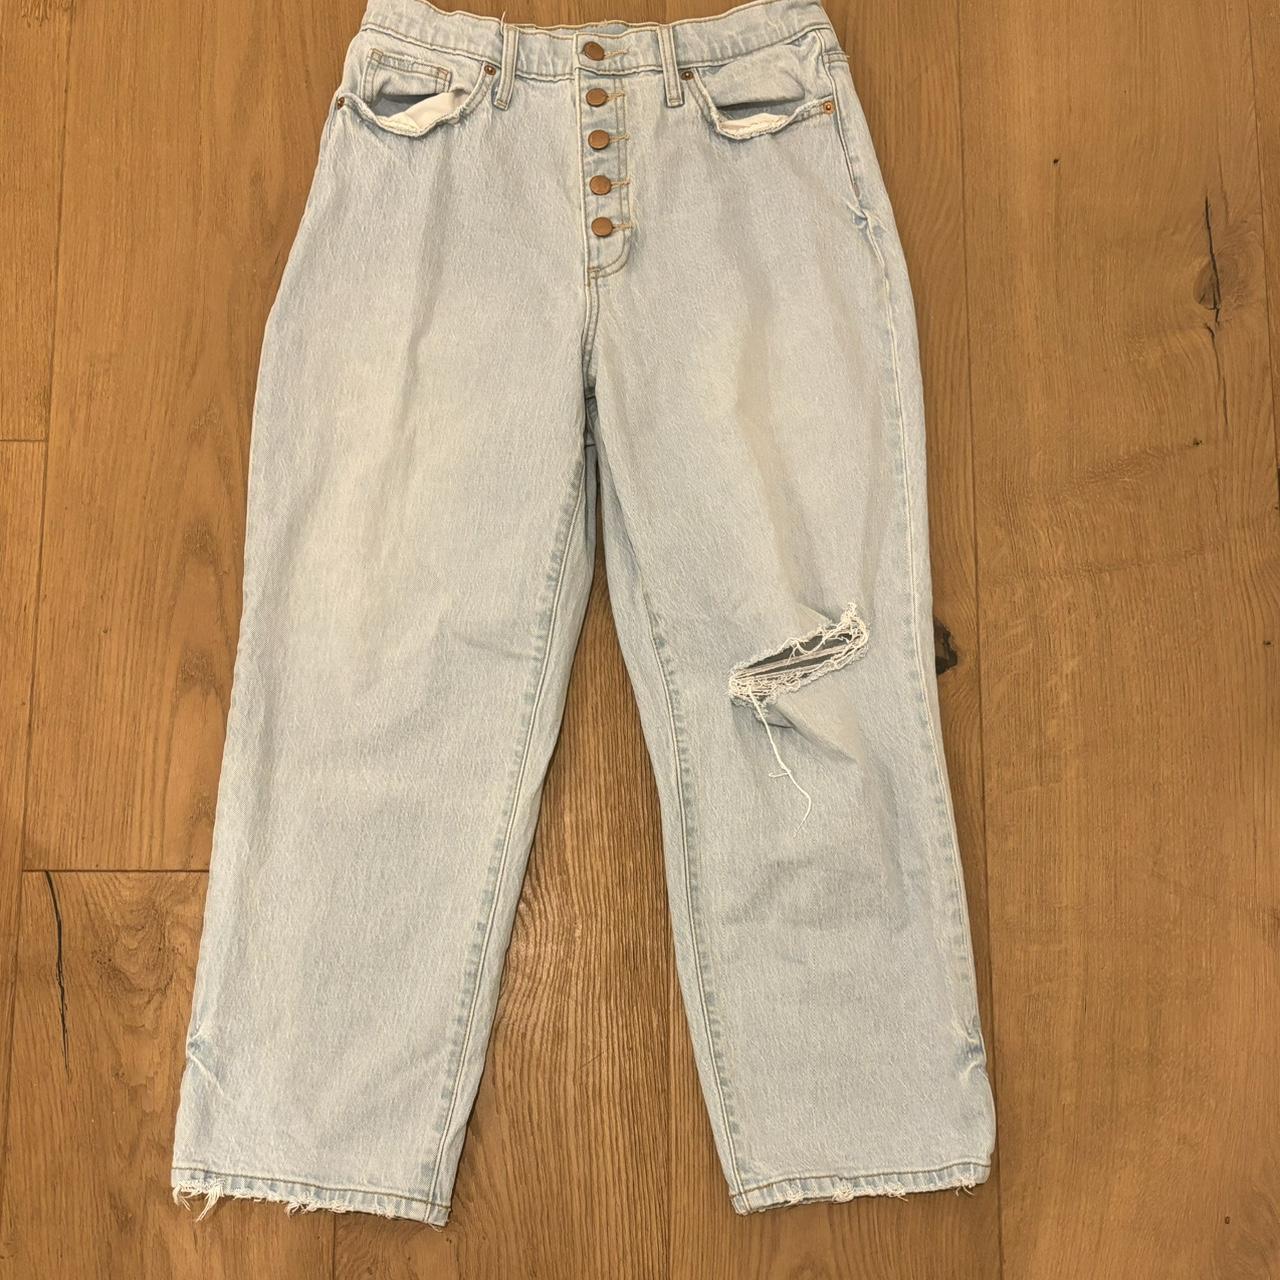 Vintage baggy skater jeans Size 28 waist Inseam 24... - Depop